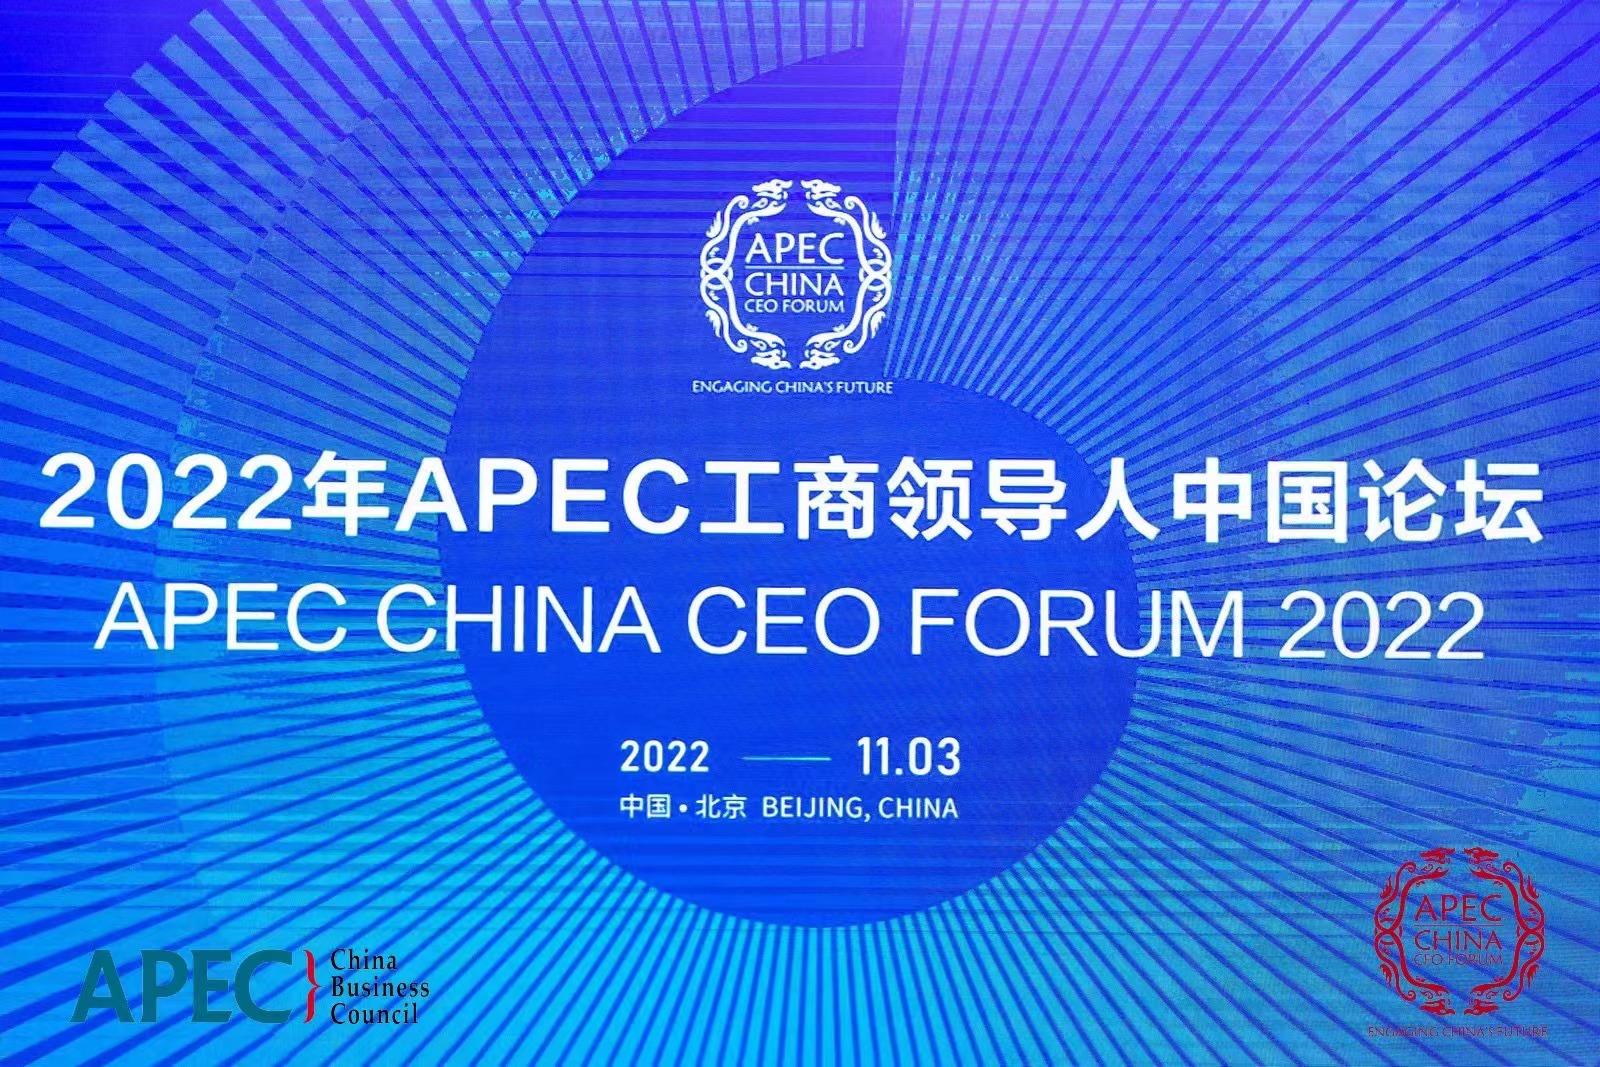 王俊林律师受邀参加2022年APEC工商领导人中国论坛